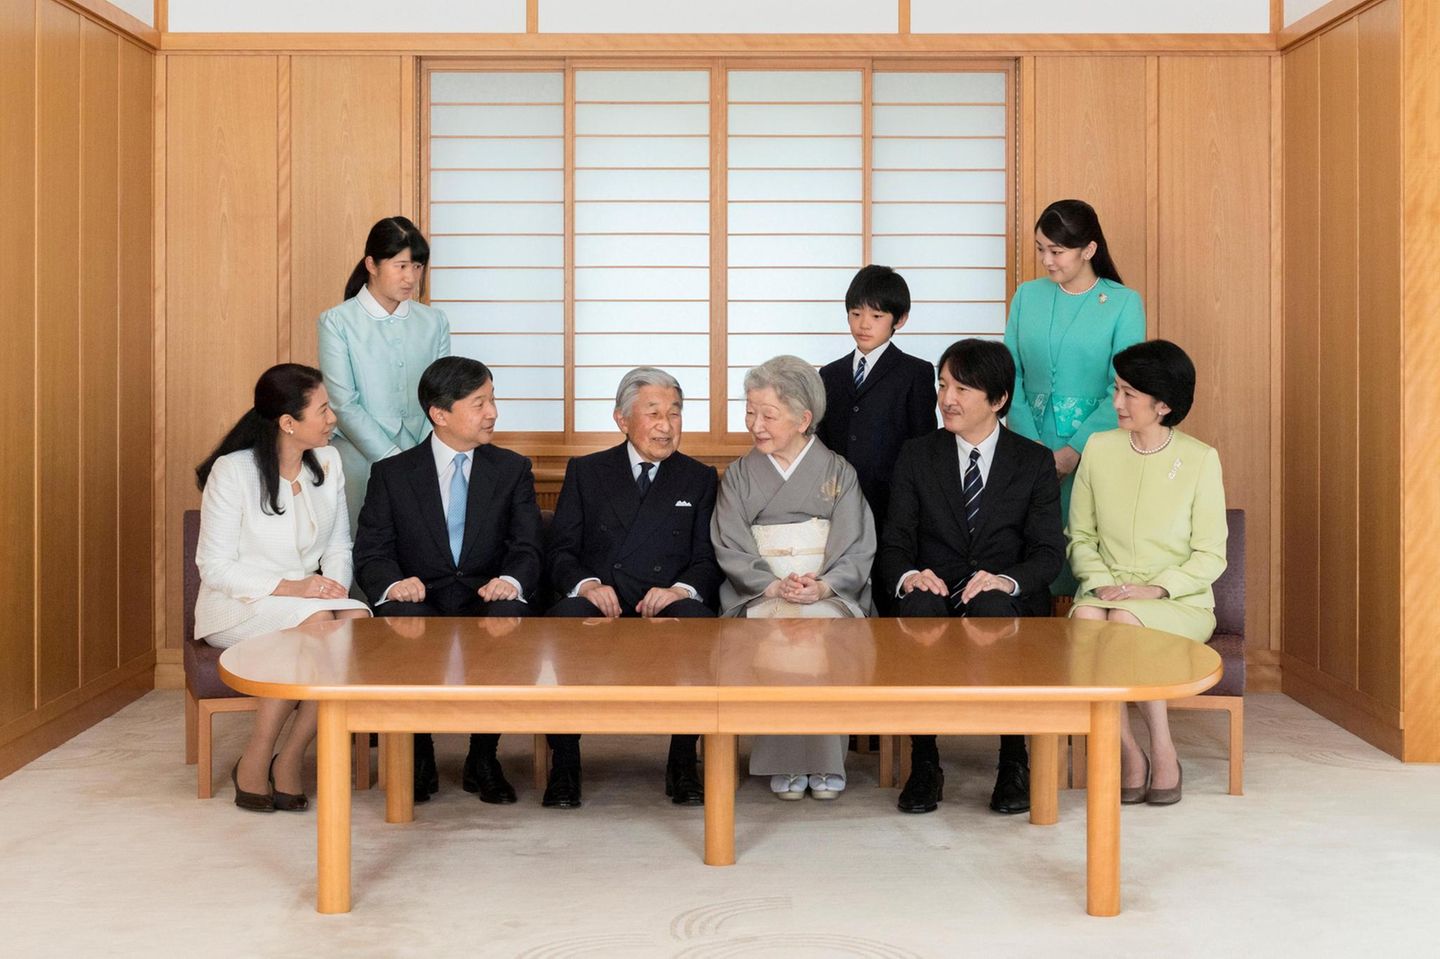 1. Januar 2018  Bitte recht freundlich: Die japanische Kaiserfamilie um Kaiser Akihito hat sich im November versammelt für das alljährliche Neujahrsfoto.